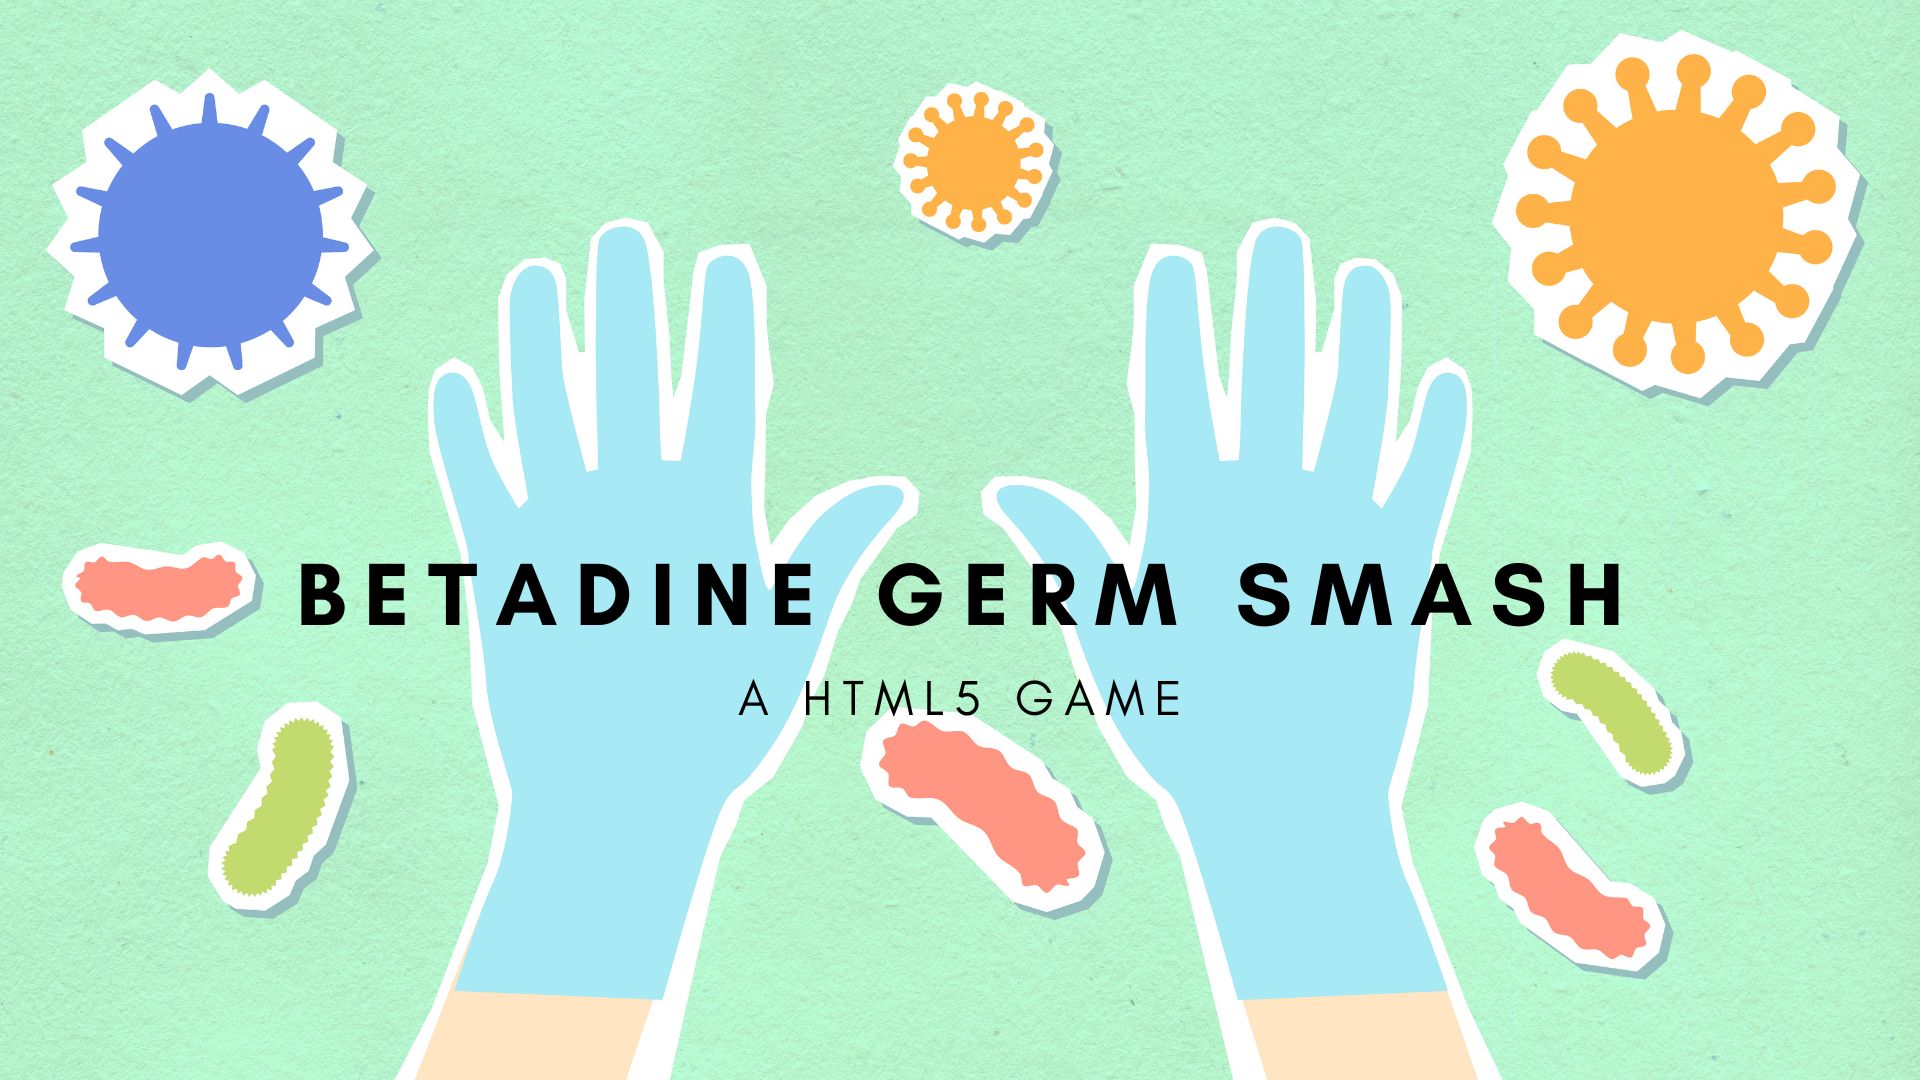 Betadine Germ Smash - A HTML5 game